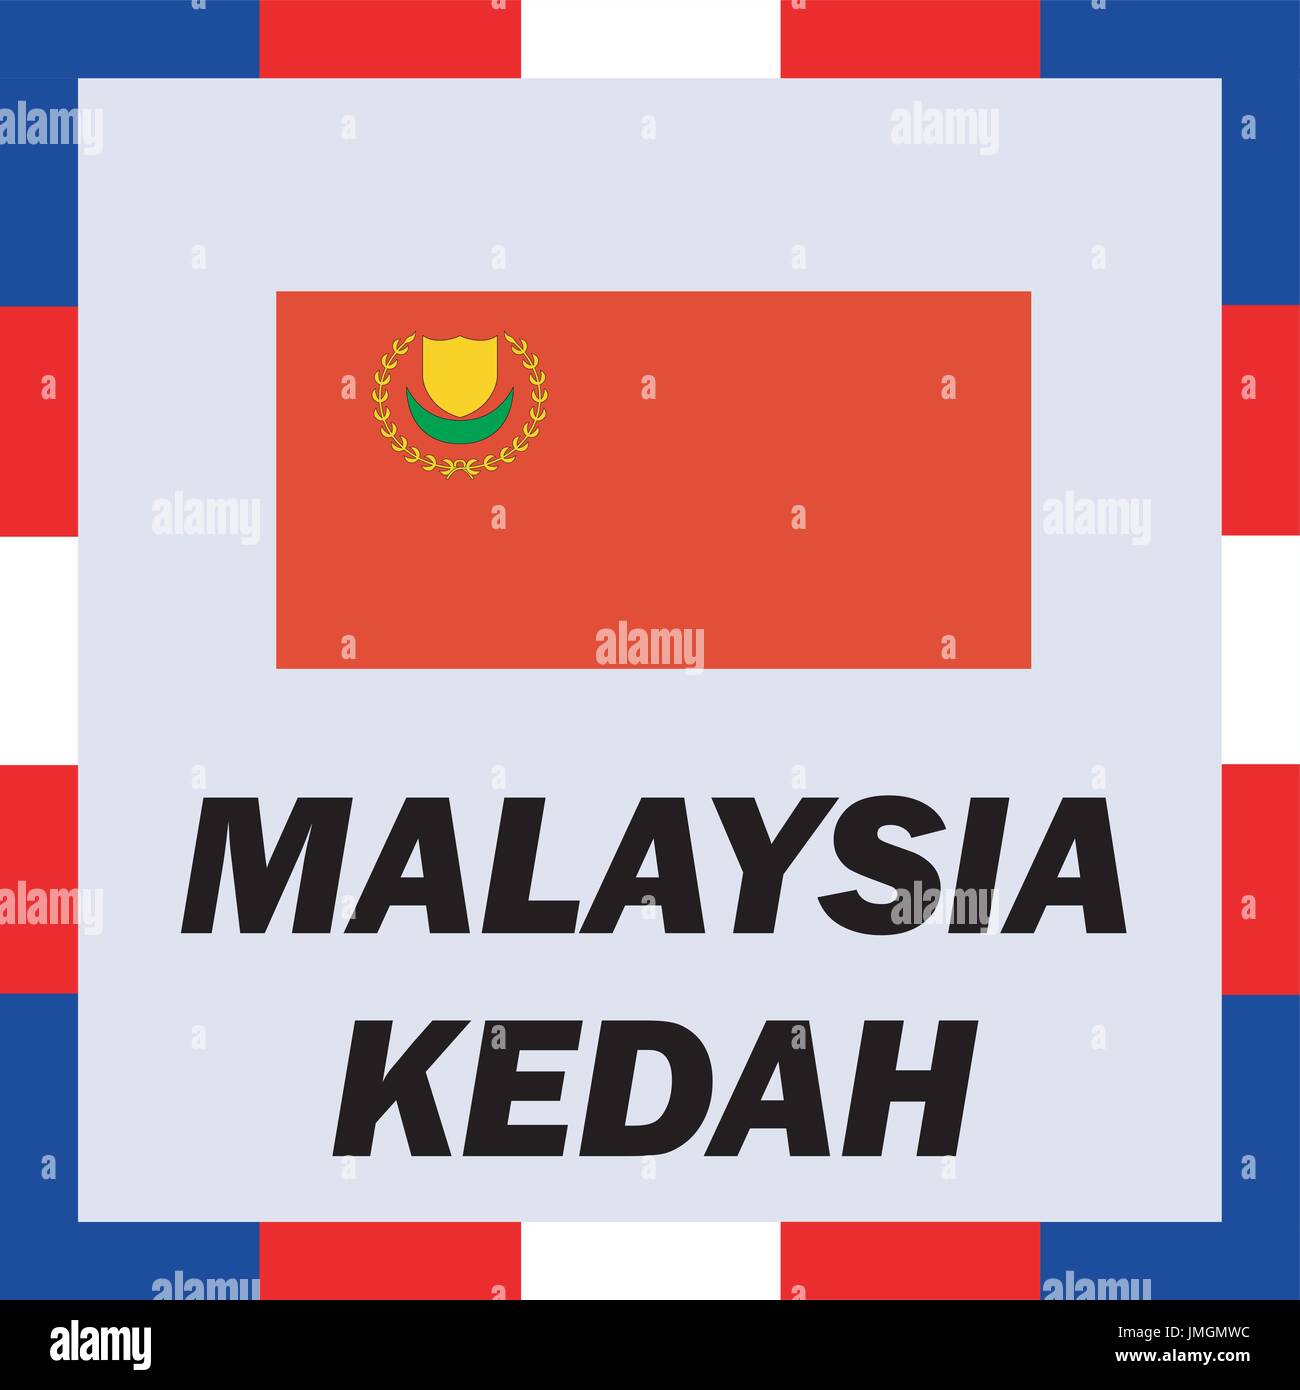 L'enseigne officielle, drapeau et d'arm de Malaisie - Kedah Illustration de Vecteur